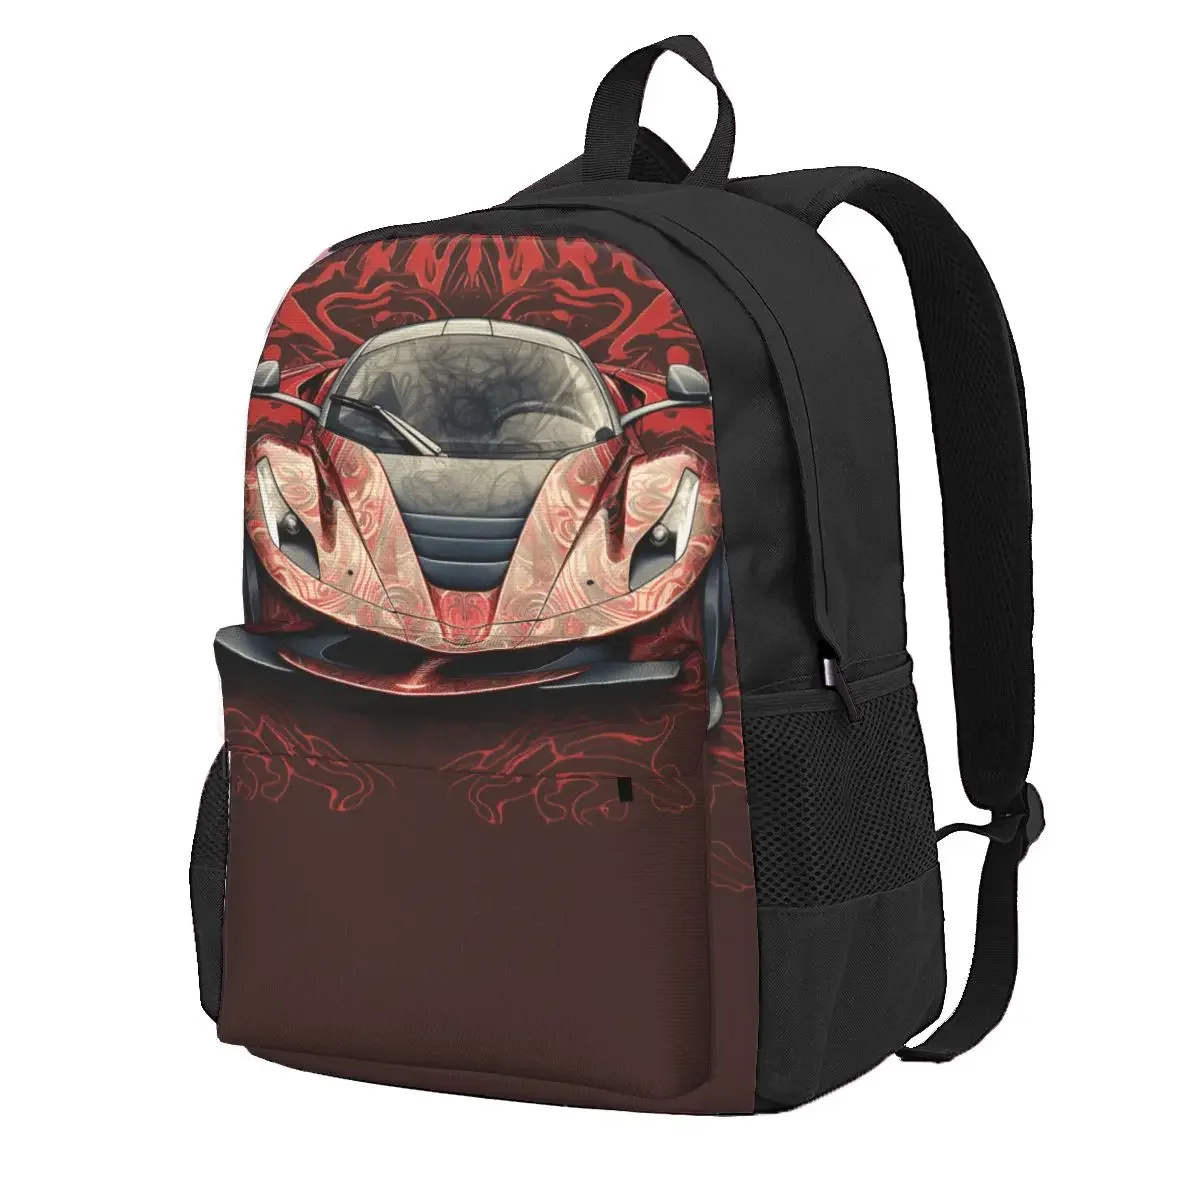 

Страстный спортивный рюкзак для автомобиля с граффити на стене, различные стили, студенческие походные рюкзаки из полиэстера, большие стильные школьные сумки, рюкзак